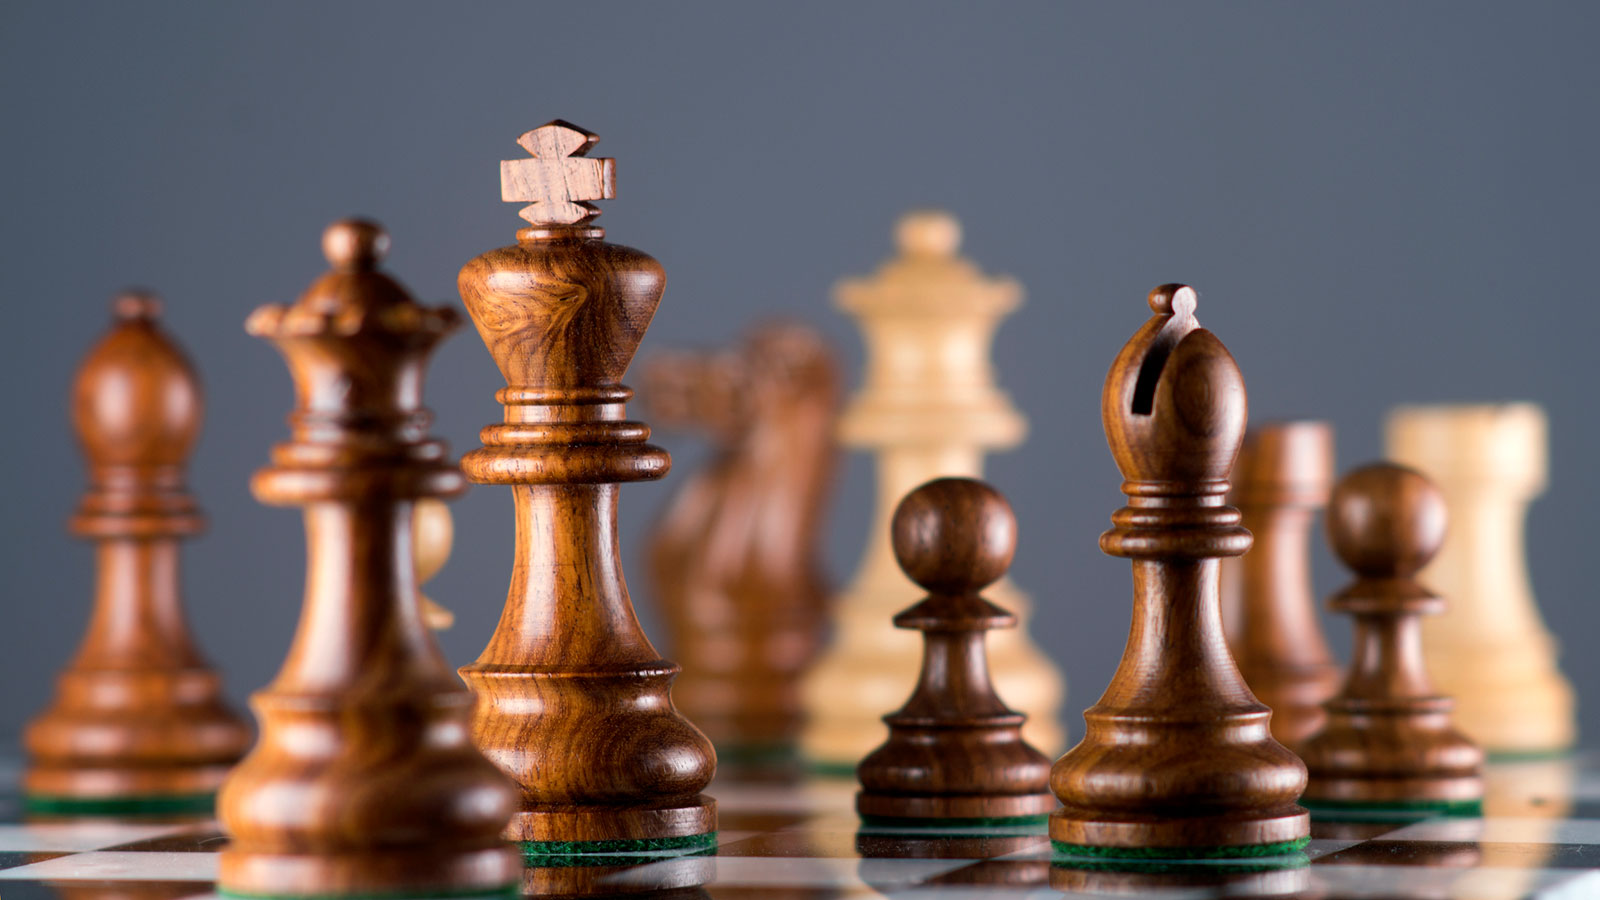 Hướng dẫn cách chơi cờ vua cho người mới bắt đầu - Vua Nệm